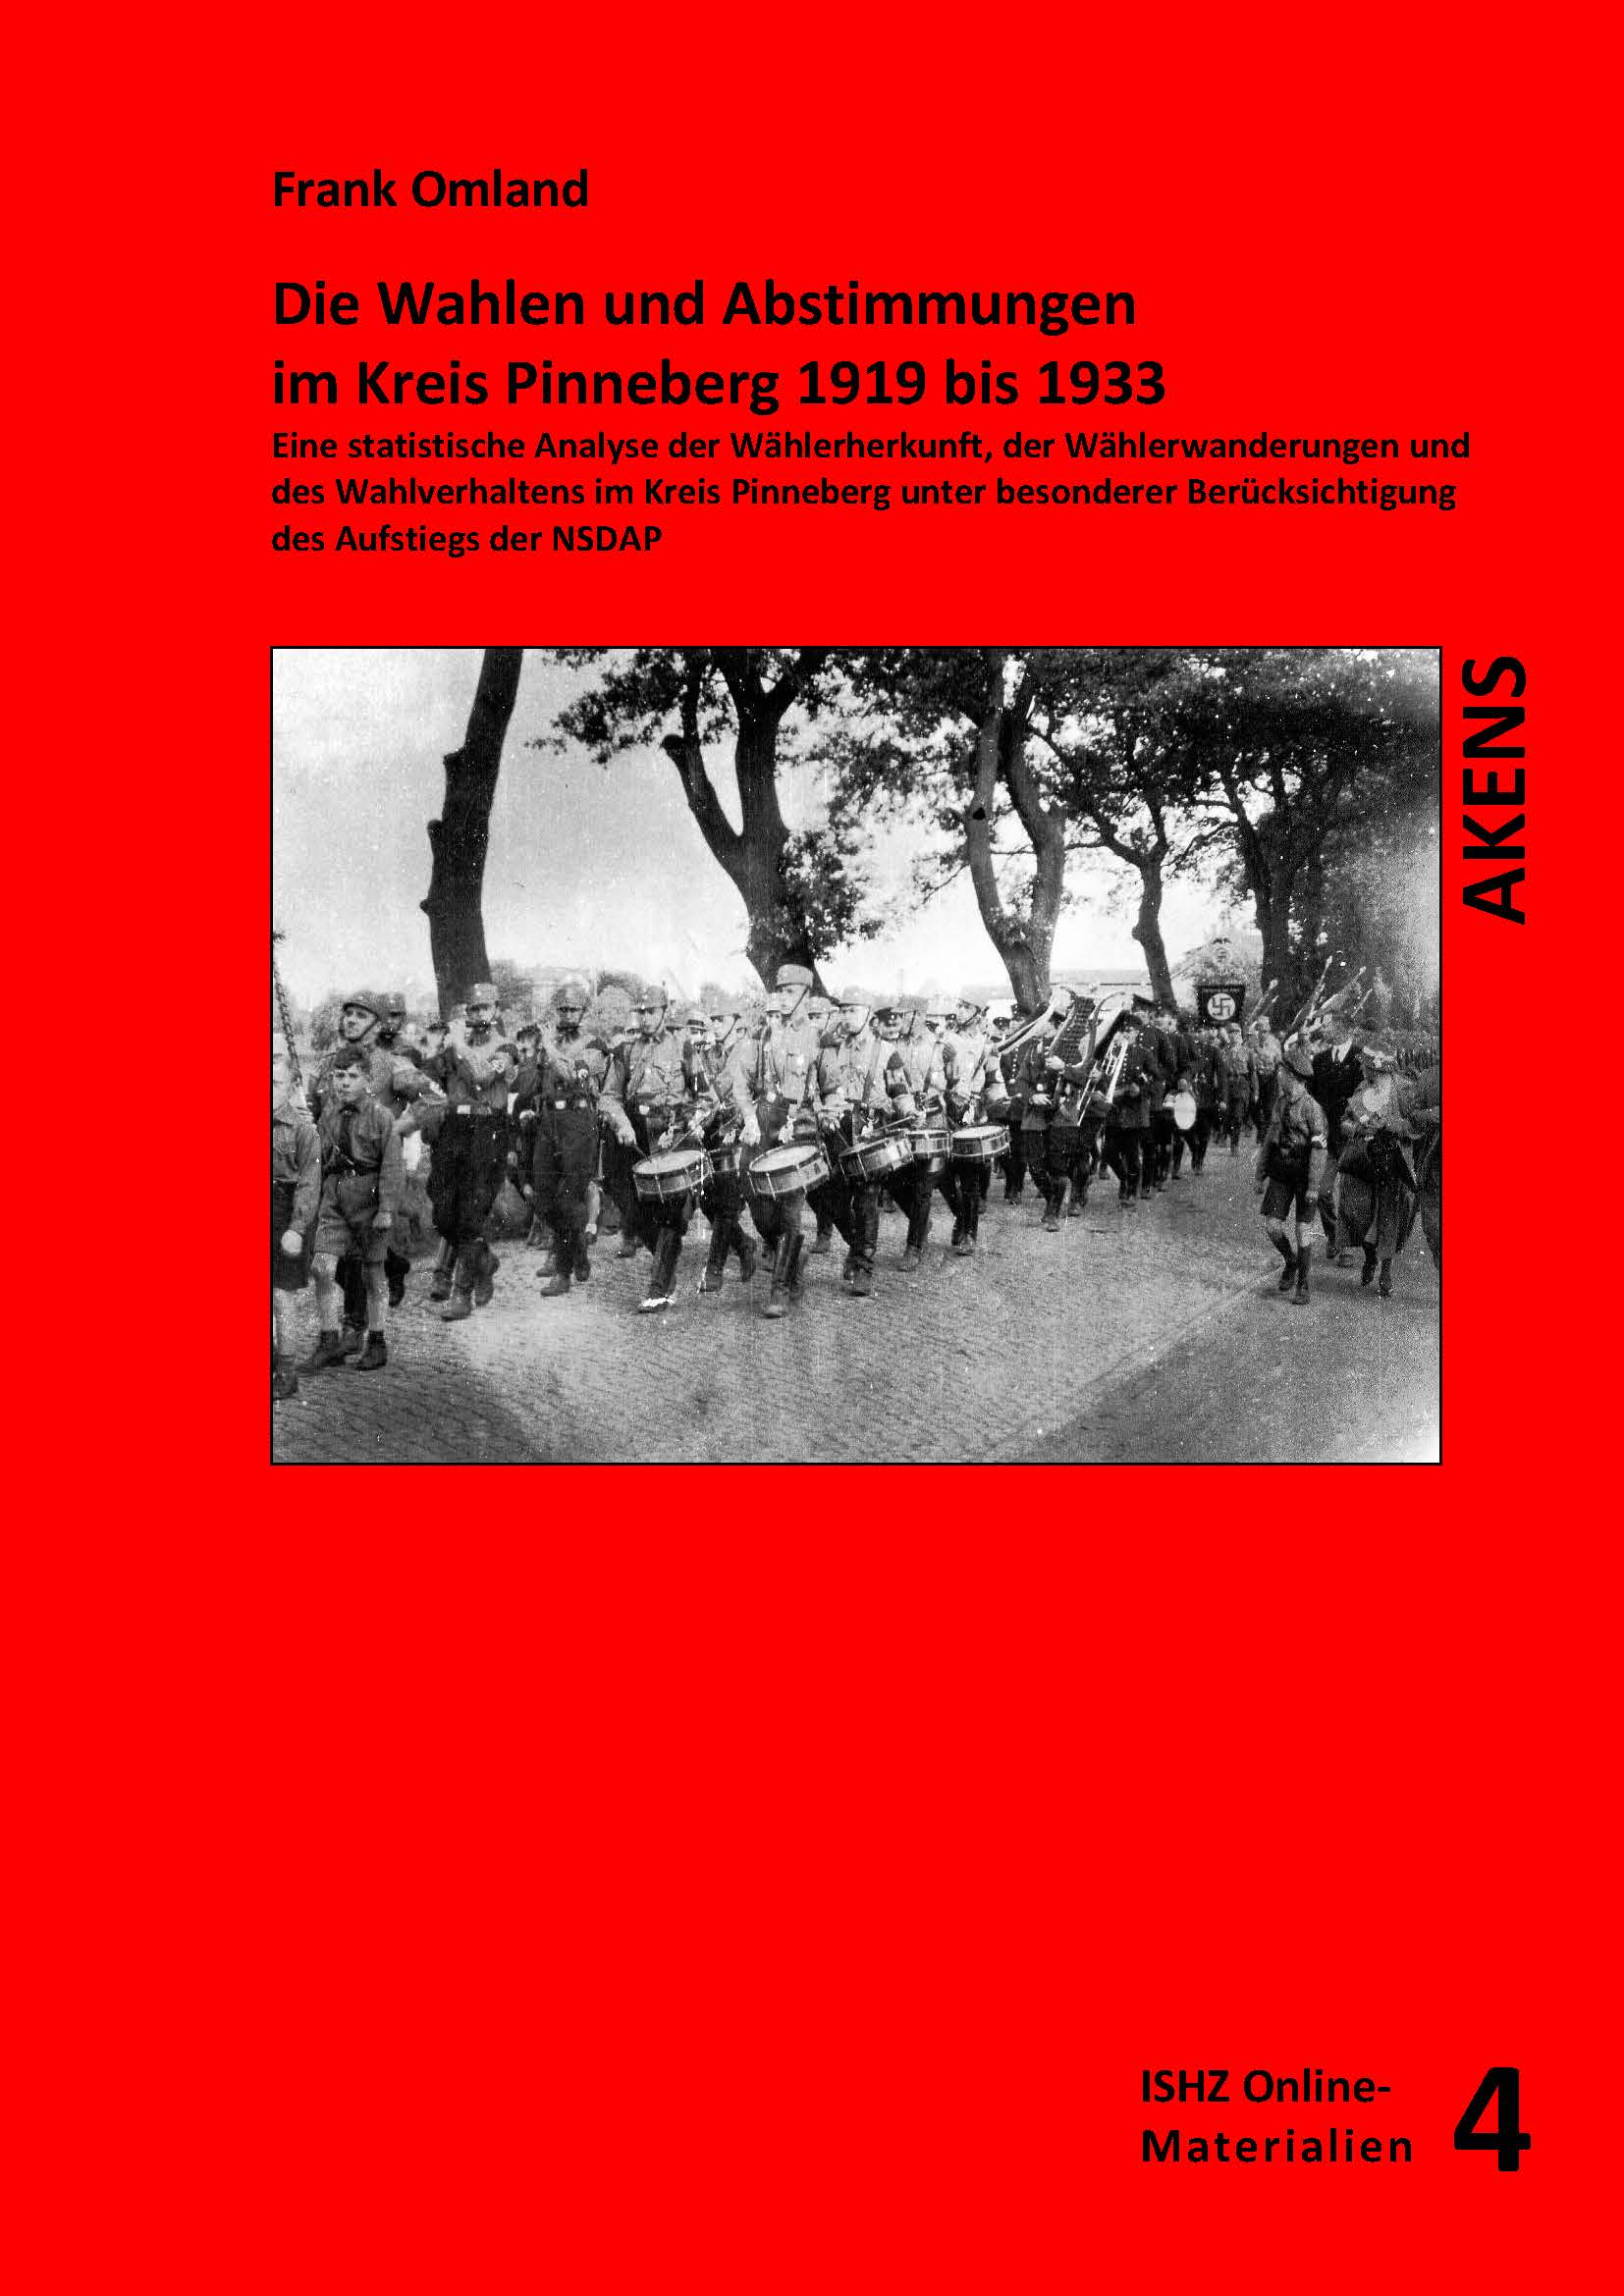 Das Titelbild zeigt einen SA-Aufmarsch in Pinneberg, vermutliche 1932.